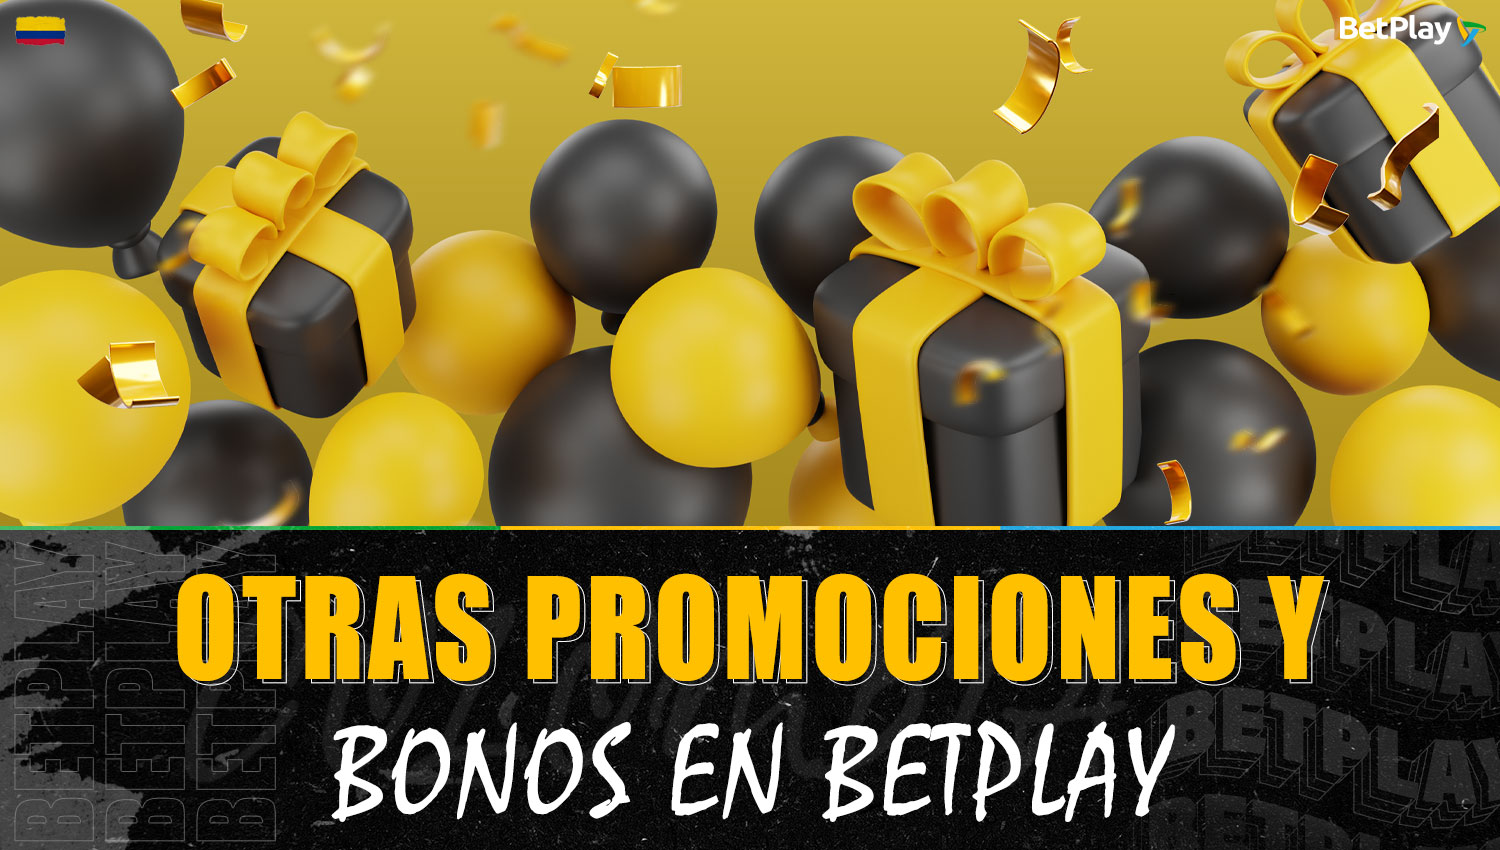 Descripción detallada de las promociones y bonificaciones disponibles en la plataforma Betplay